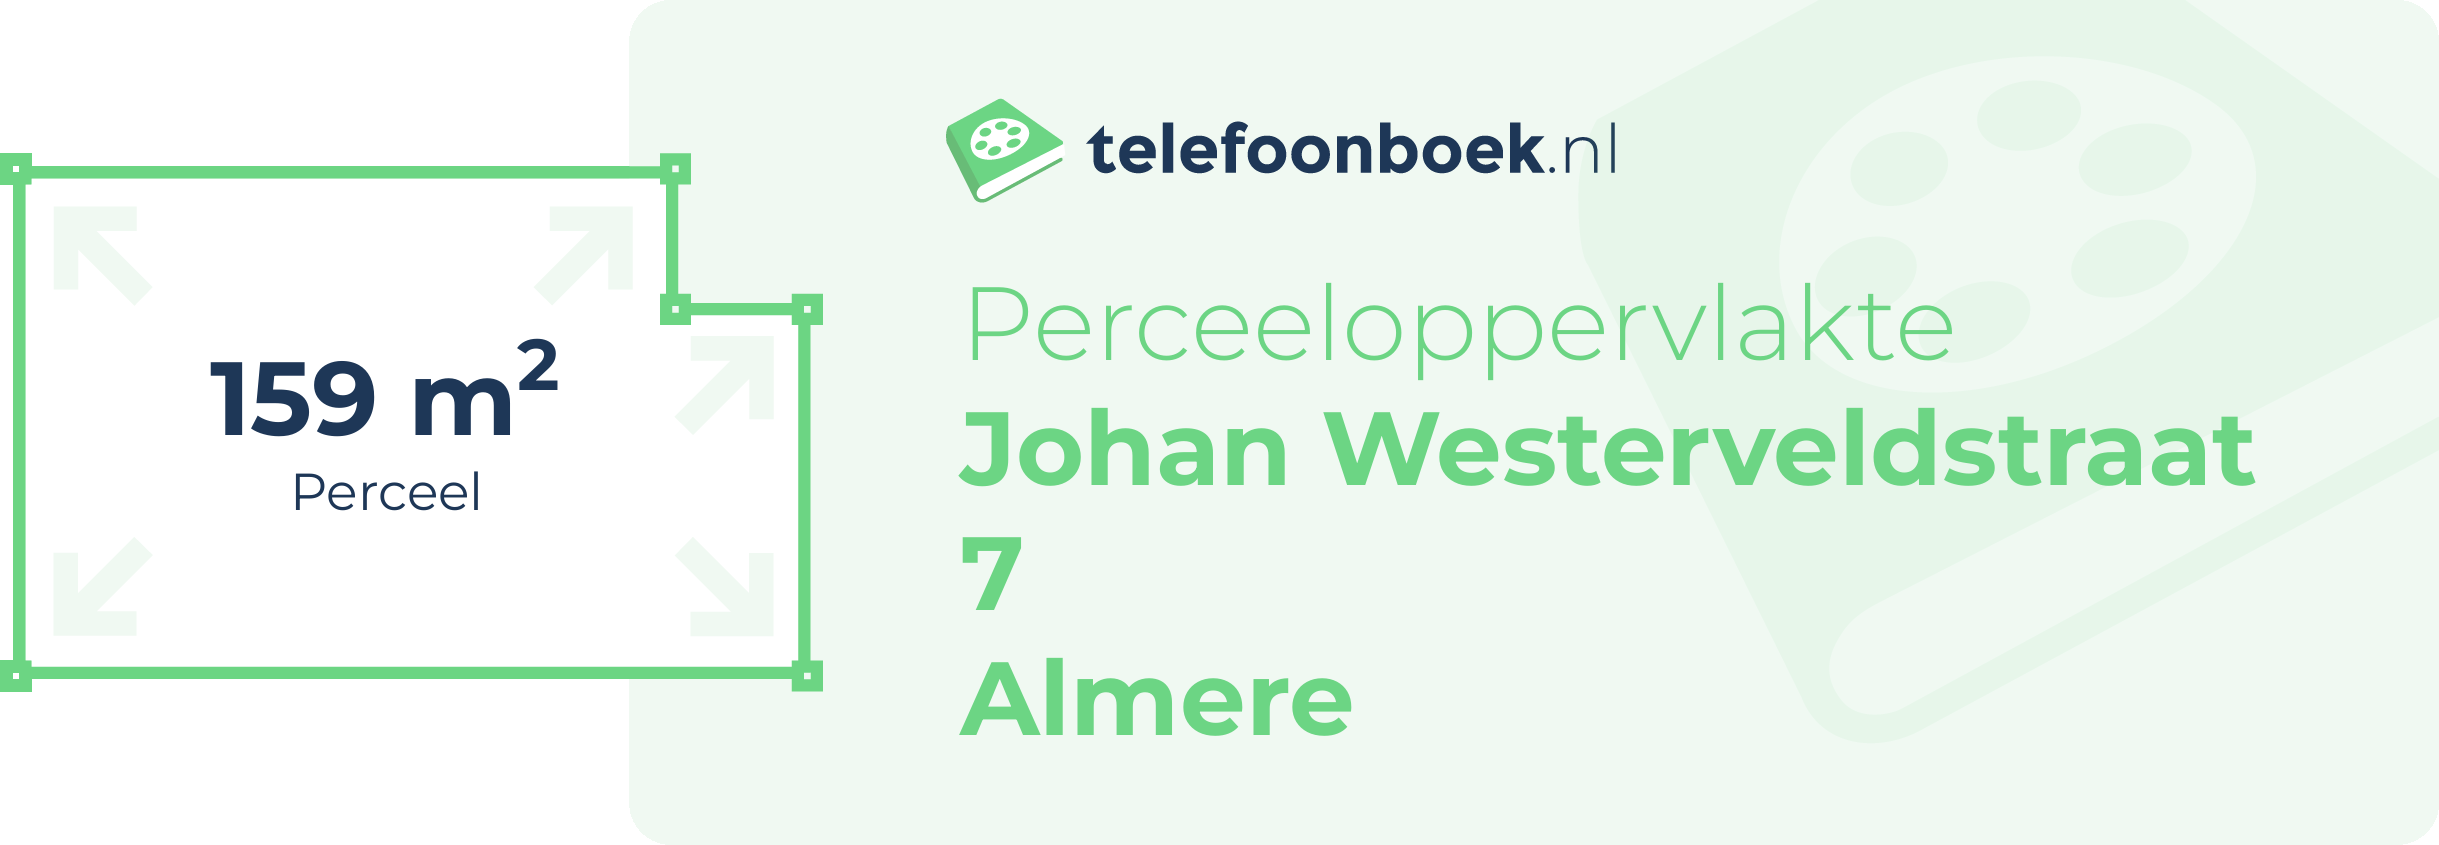 Perceeloppervlakte Johan Westerveldstraat 7 Almere